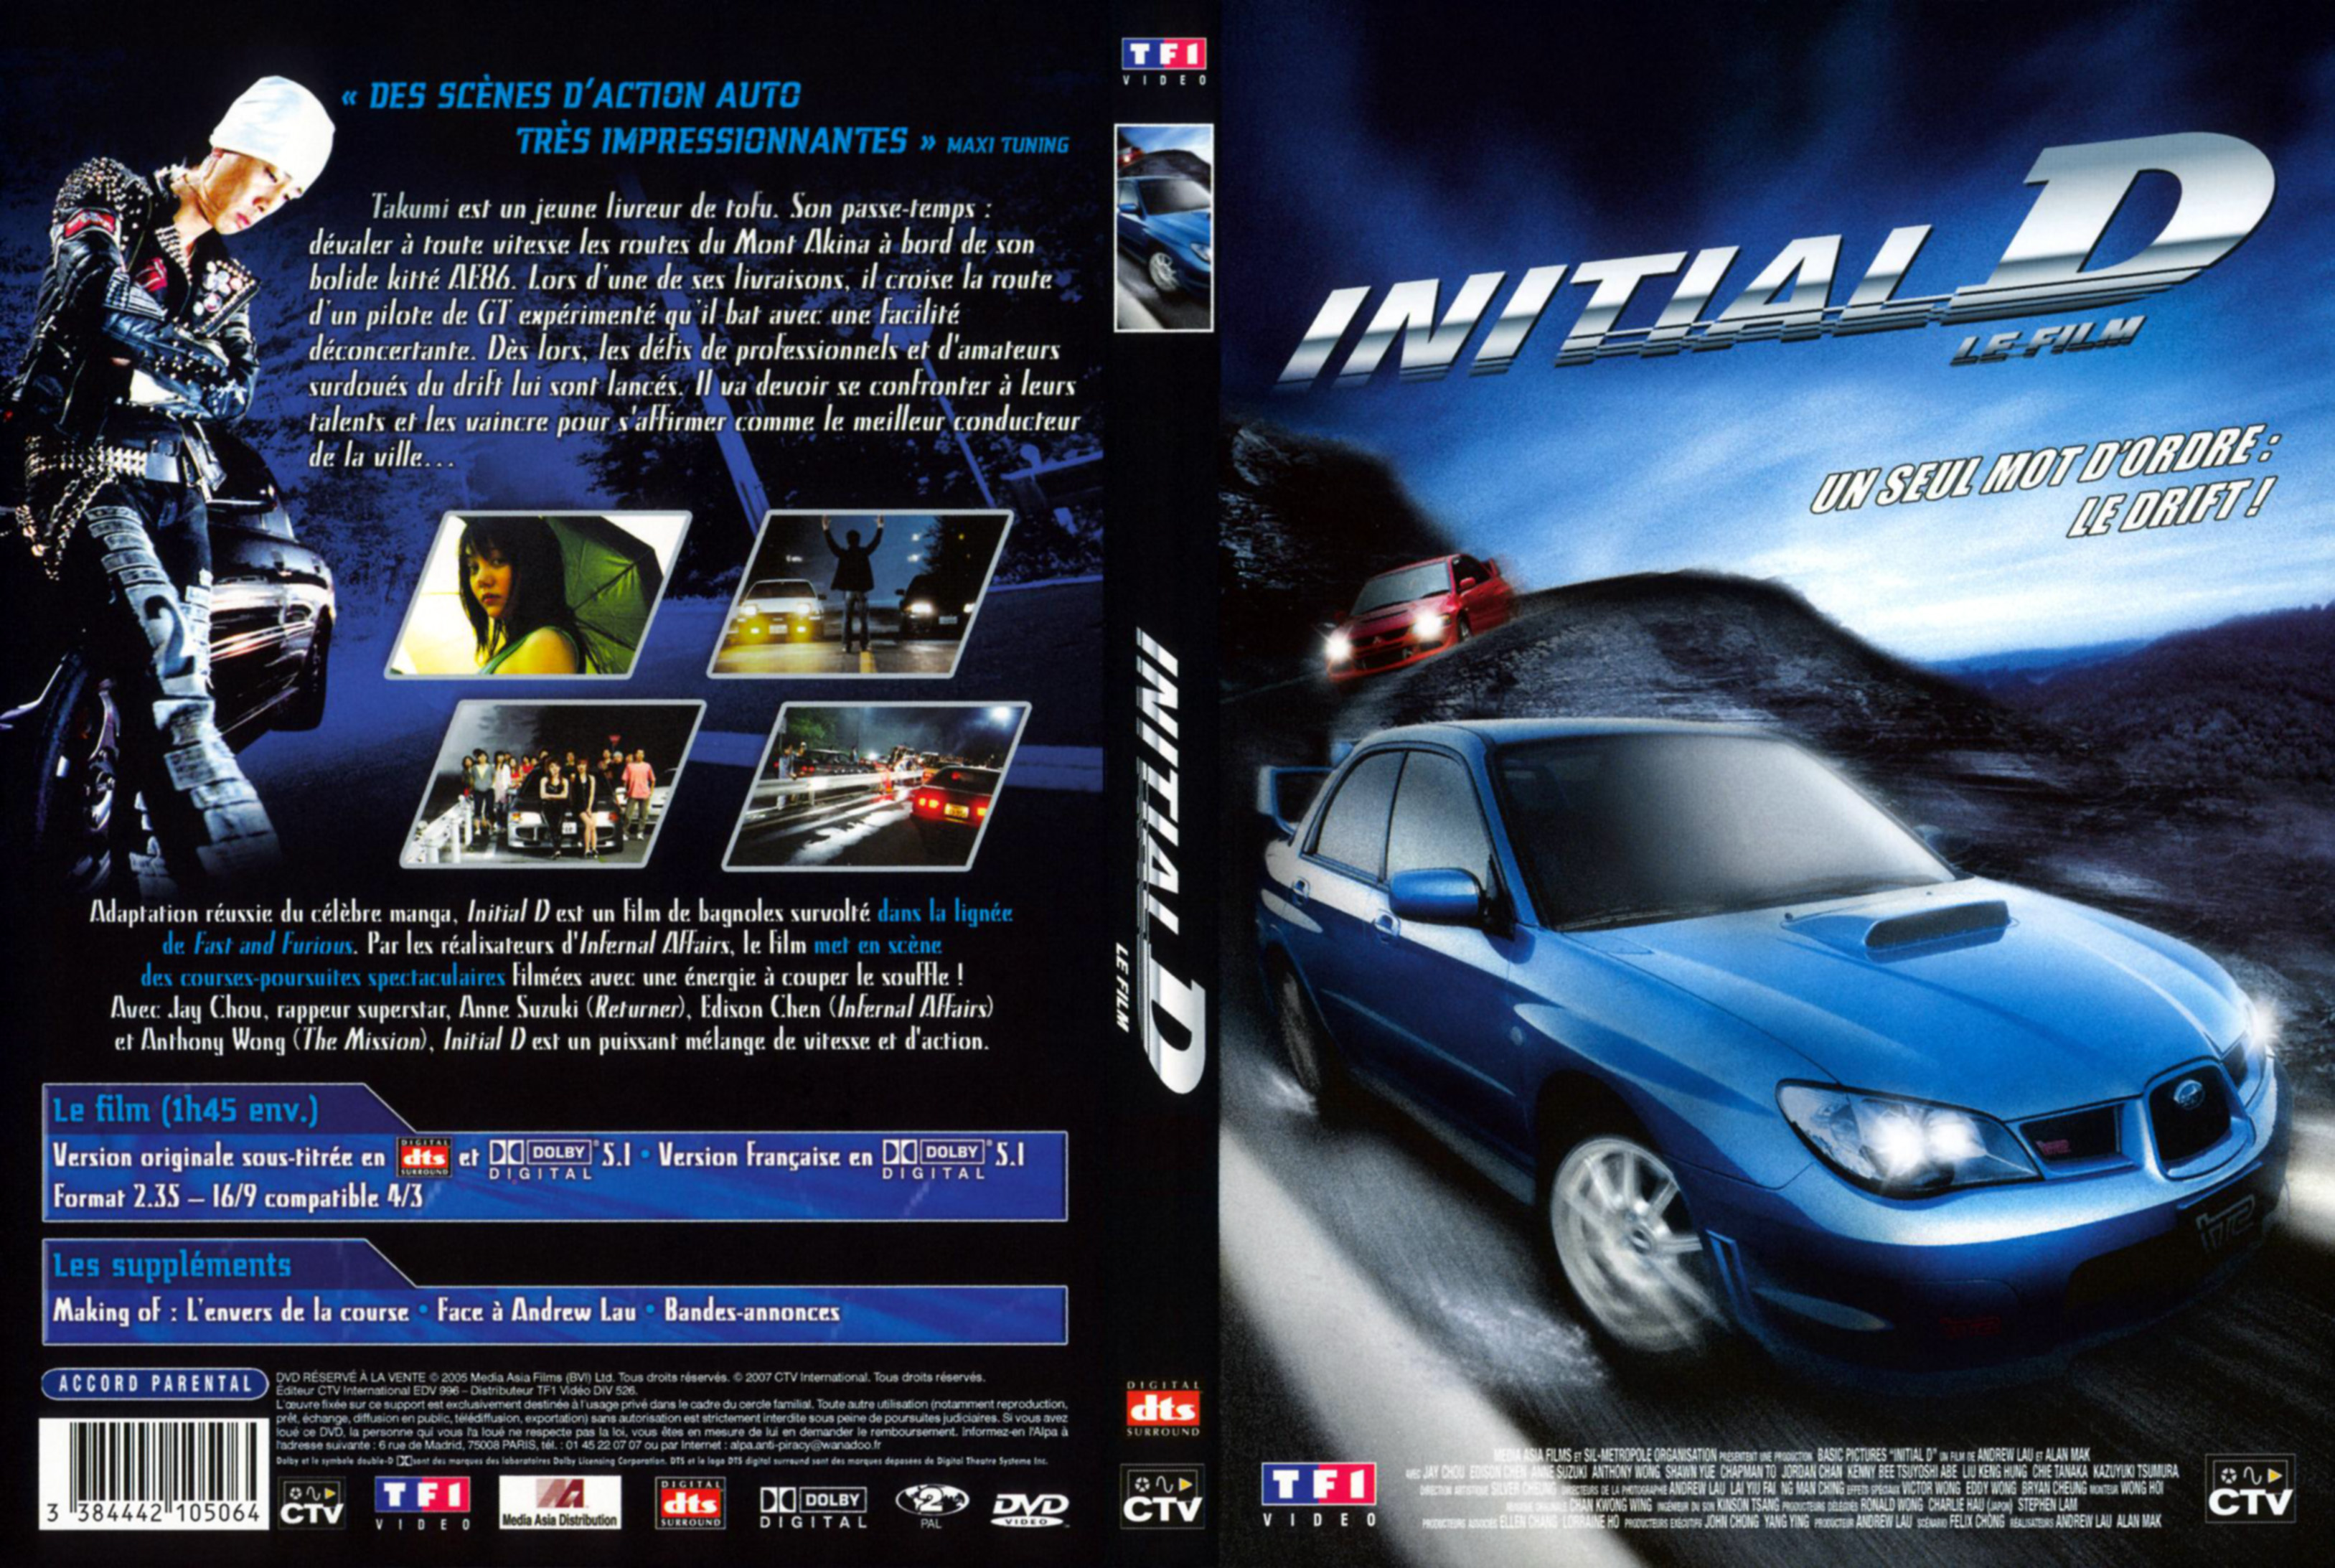 Jaquette DVD Initial D - Le film